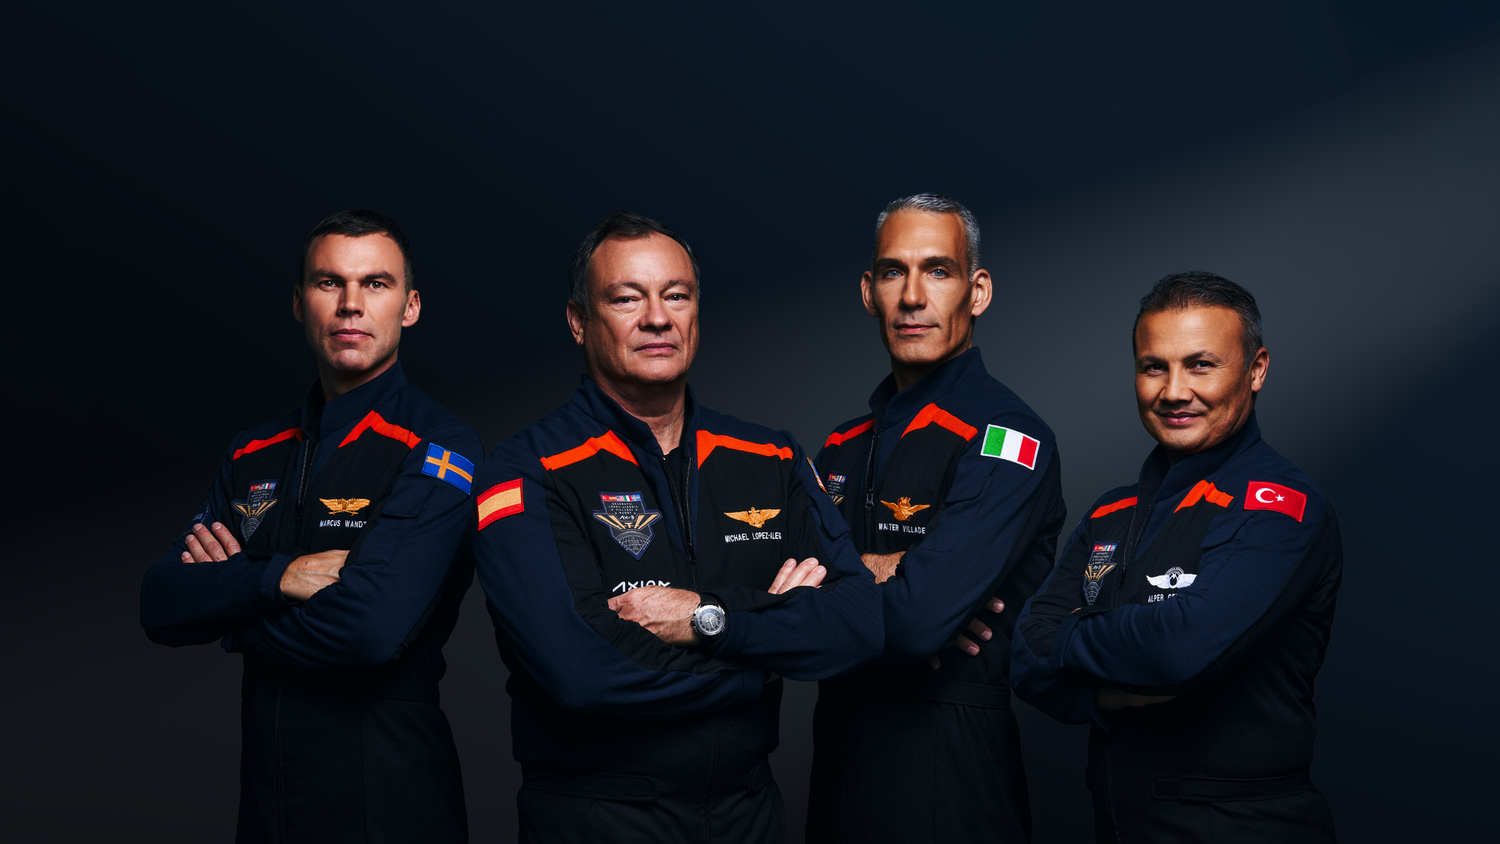 axiom space crew europeans